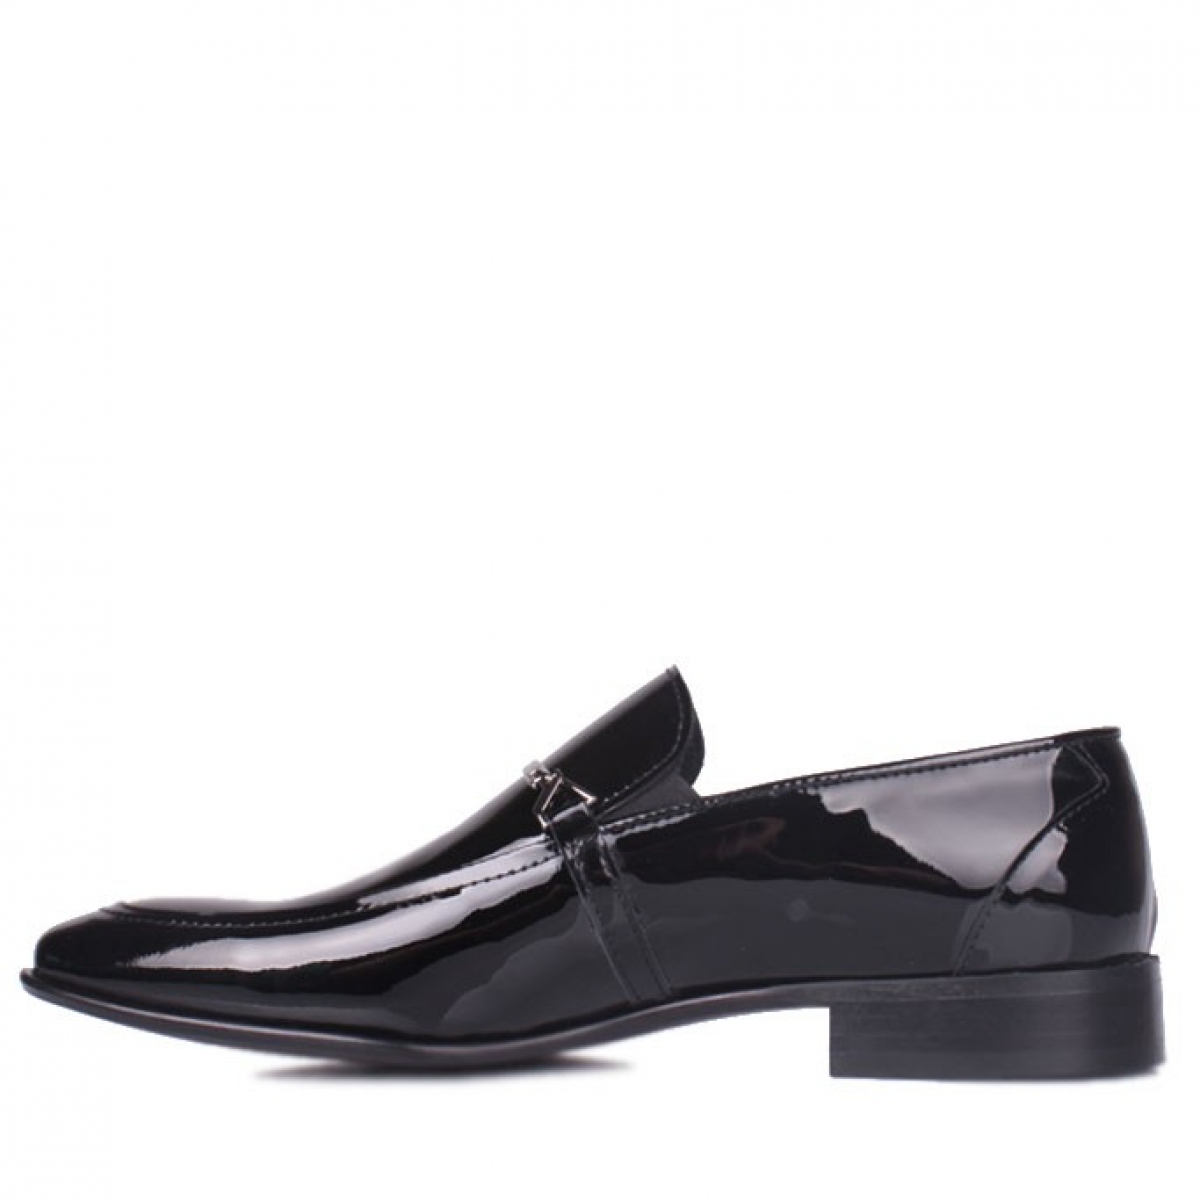 Flo - Erkan Kaban 972 020 Erkek Siyah Rugan Klasik Büyük & Küçük Numara Ayakkabı. 1